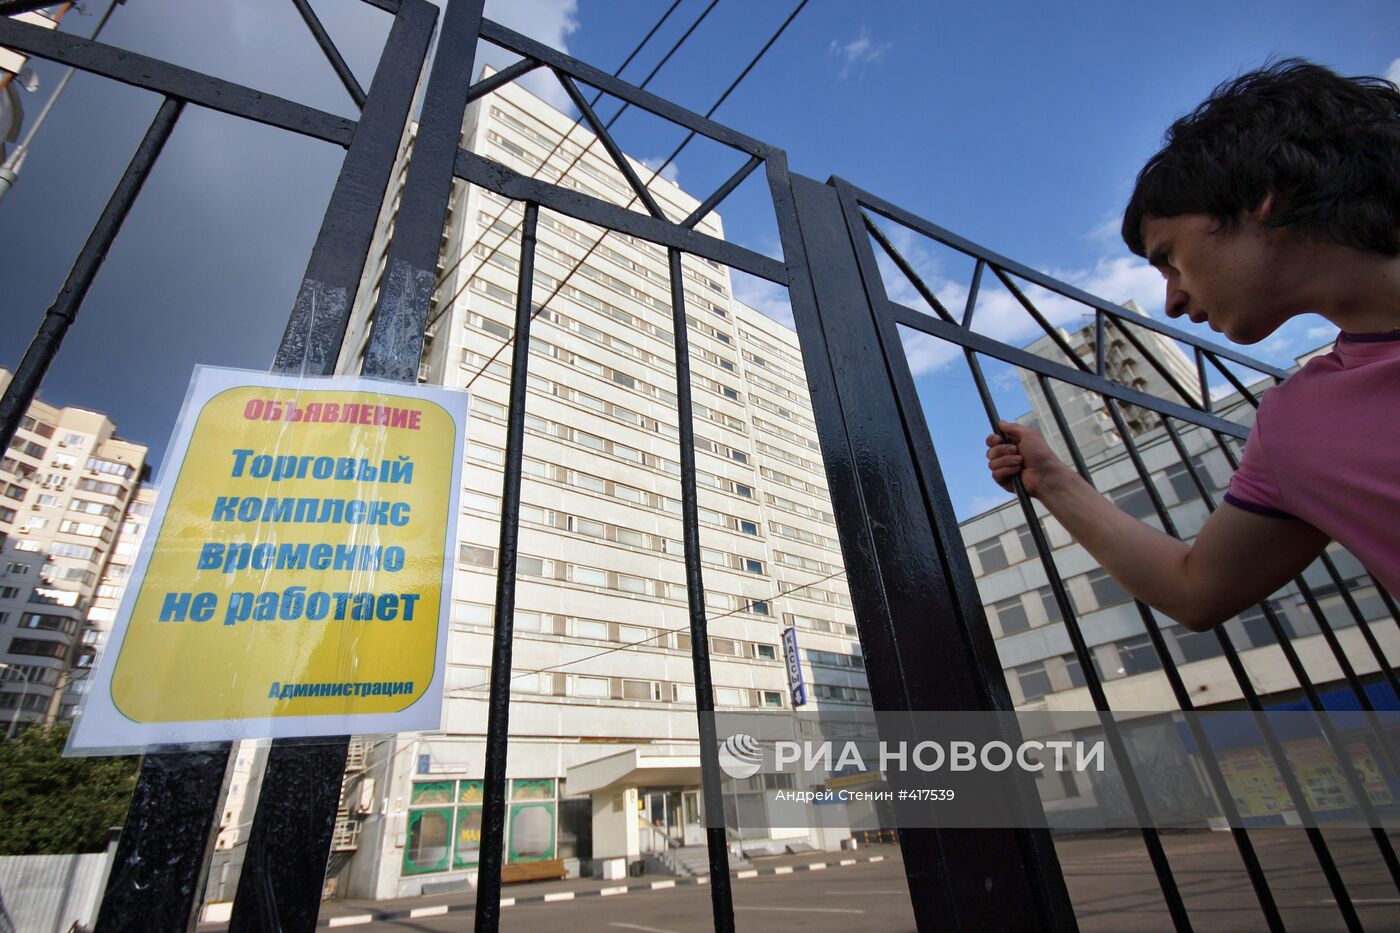 Закрыт рынок в гостинично-торговом комплексе "Севастополь"